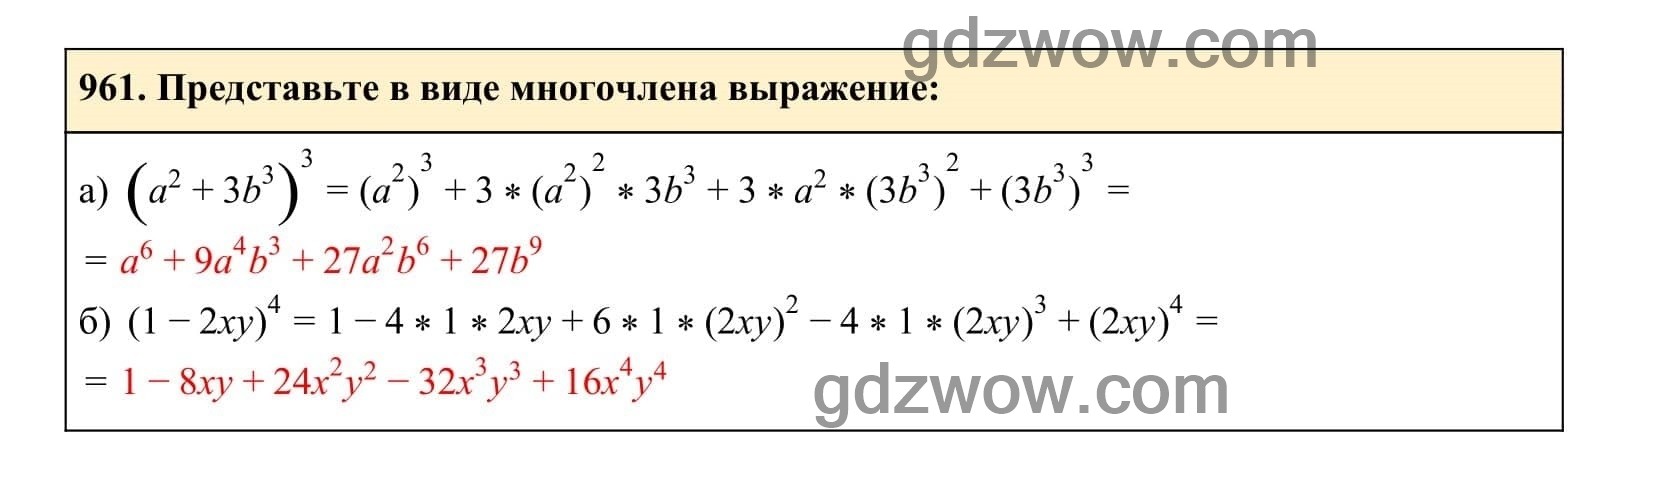 Упражнение 961 - ГДЗ по Алгебре 7 класс Учебник Макарычев (решебник) - GDZwow